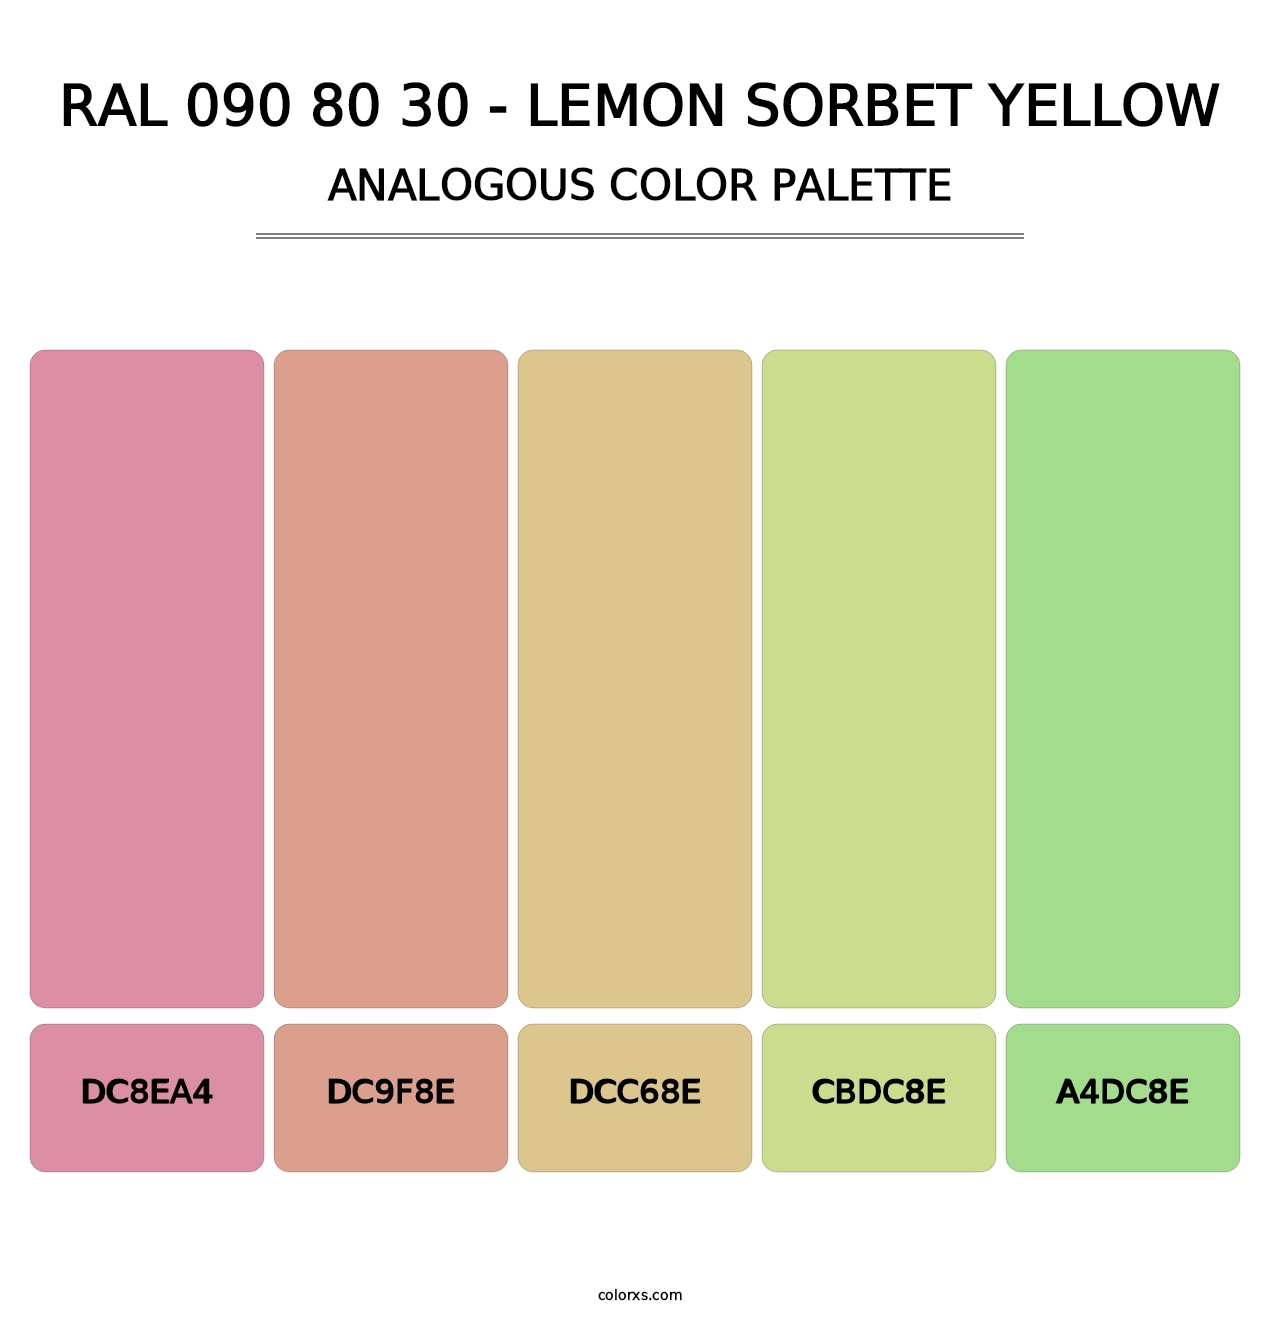 RAL 090 80 30 - Lemon Sorbet Yellow - Analogous Color Palette